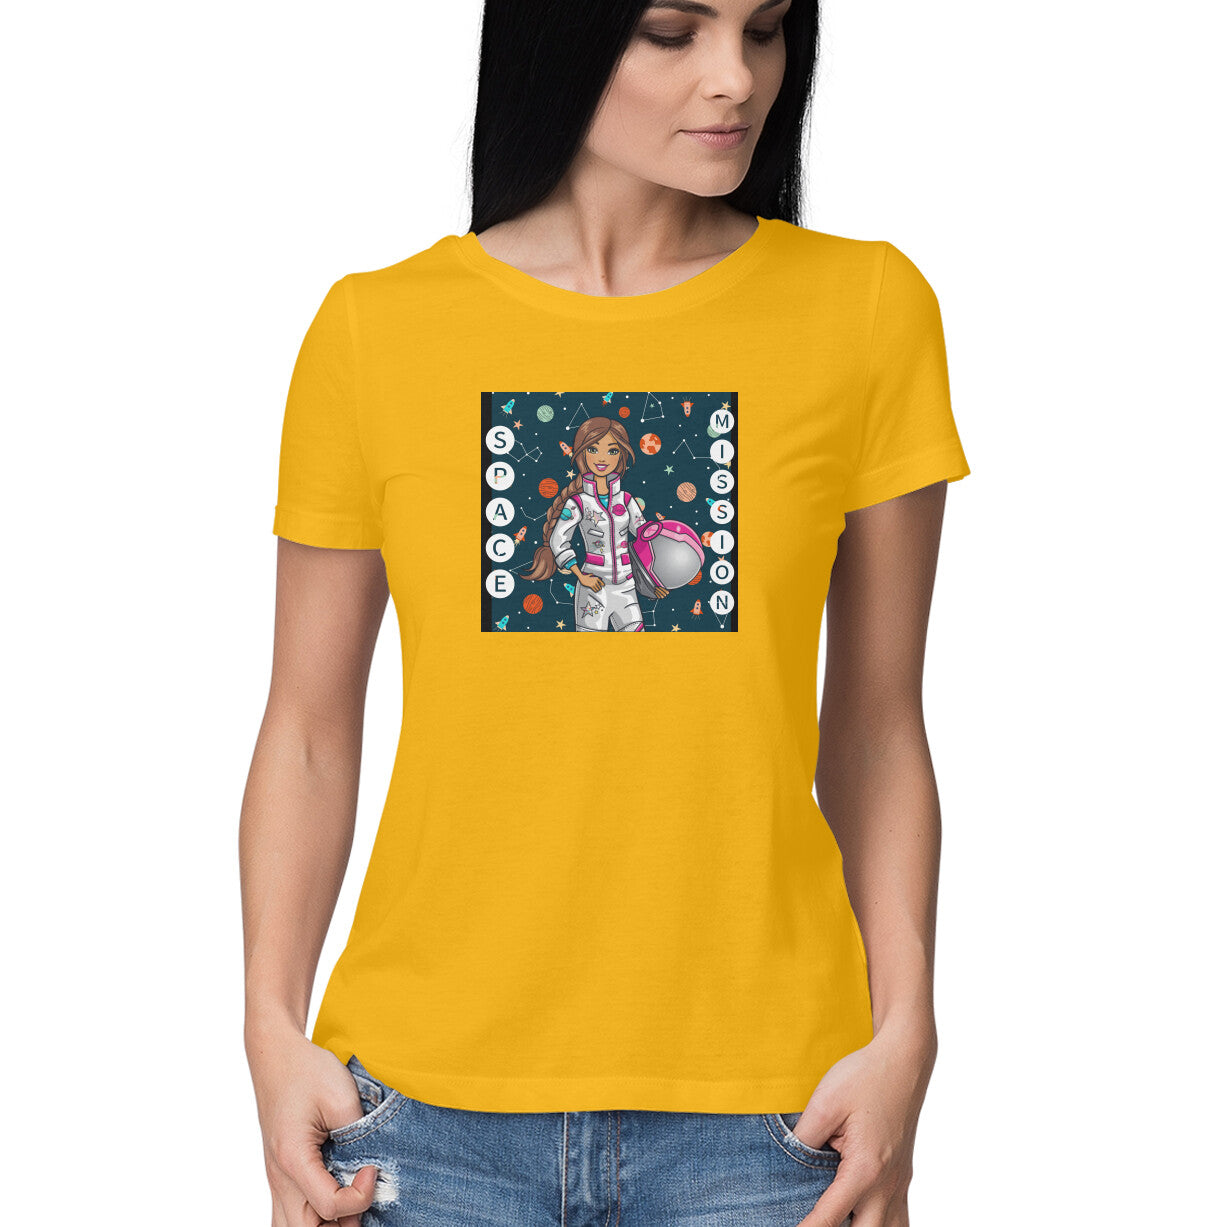 Astronaut Space Golden Yellow T-shirt for Women